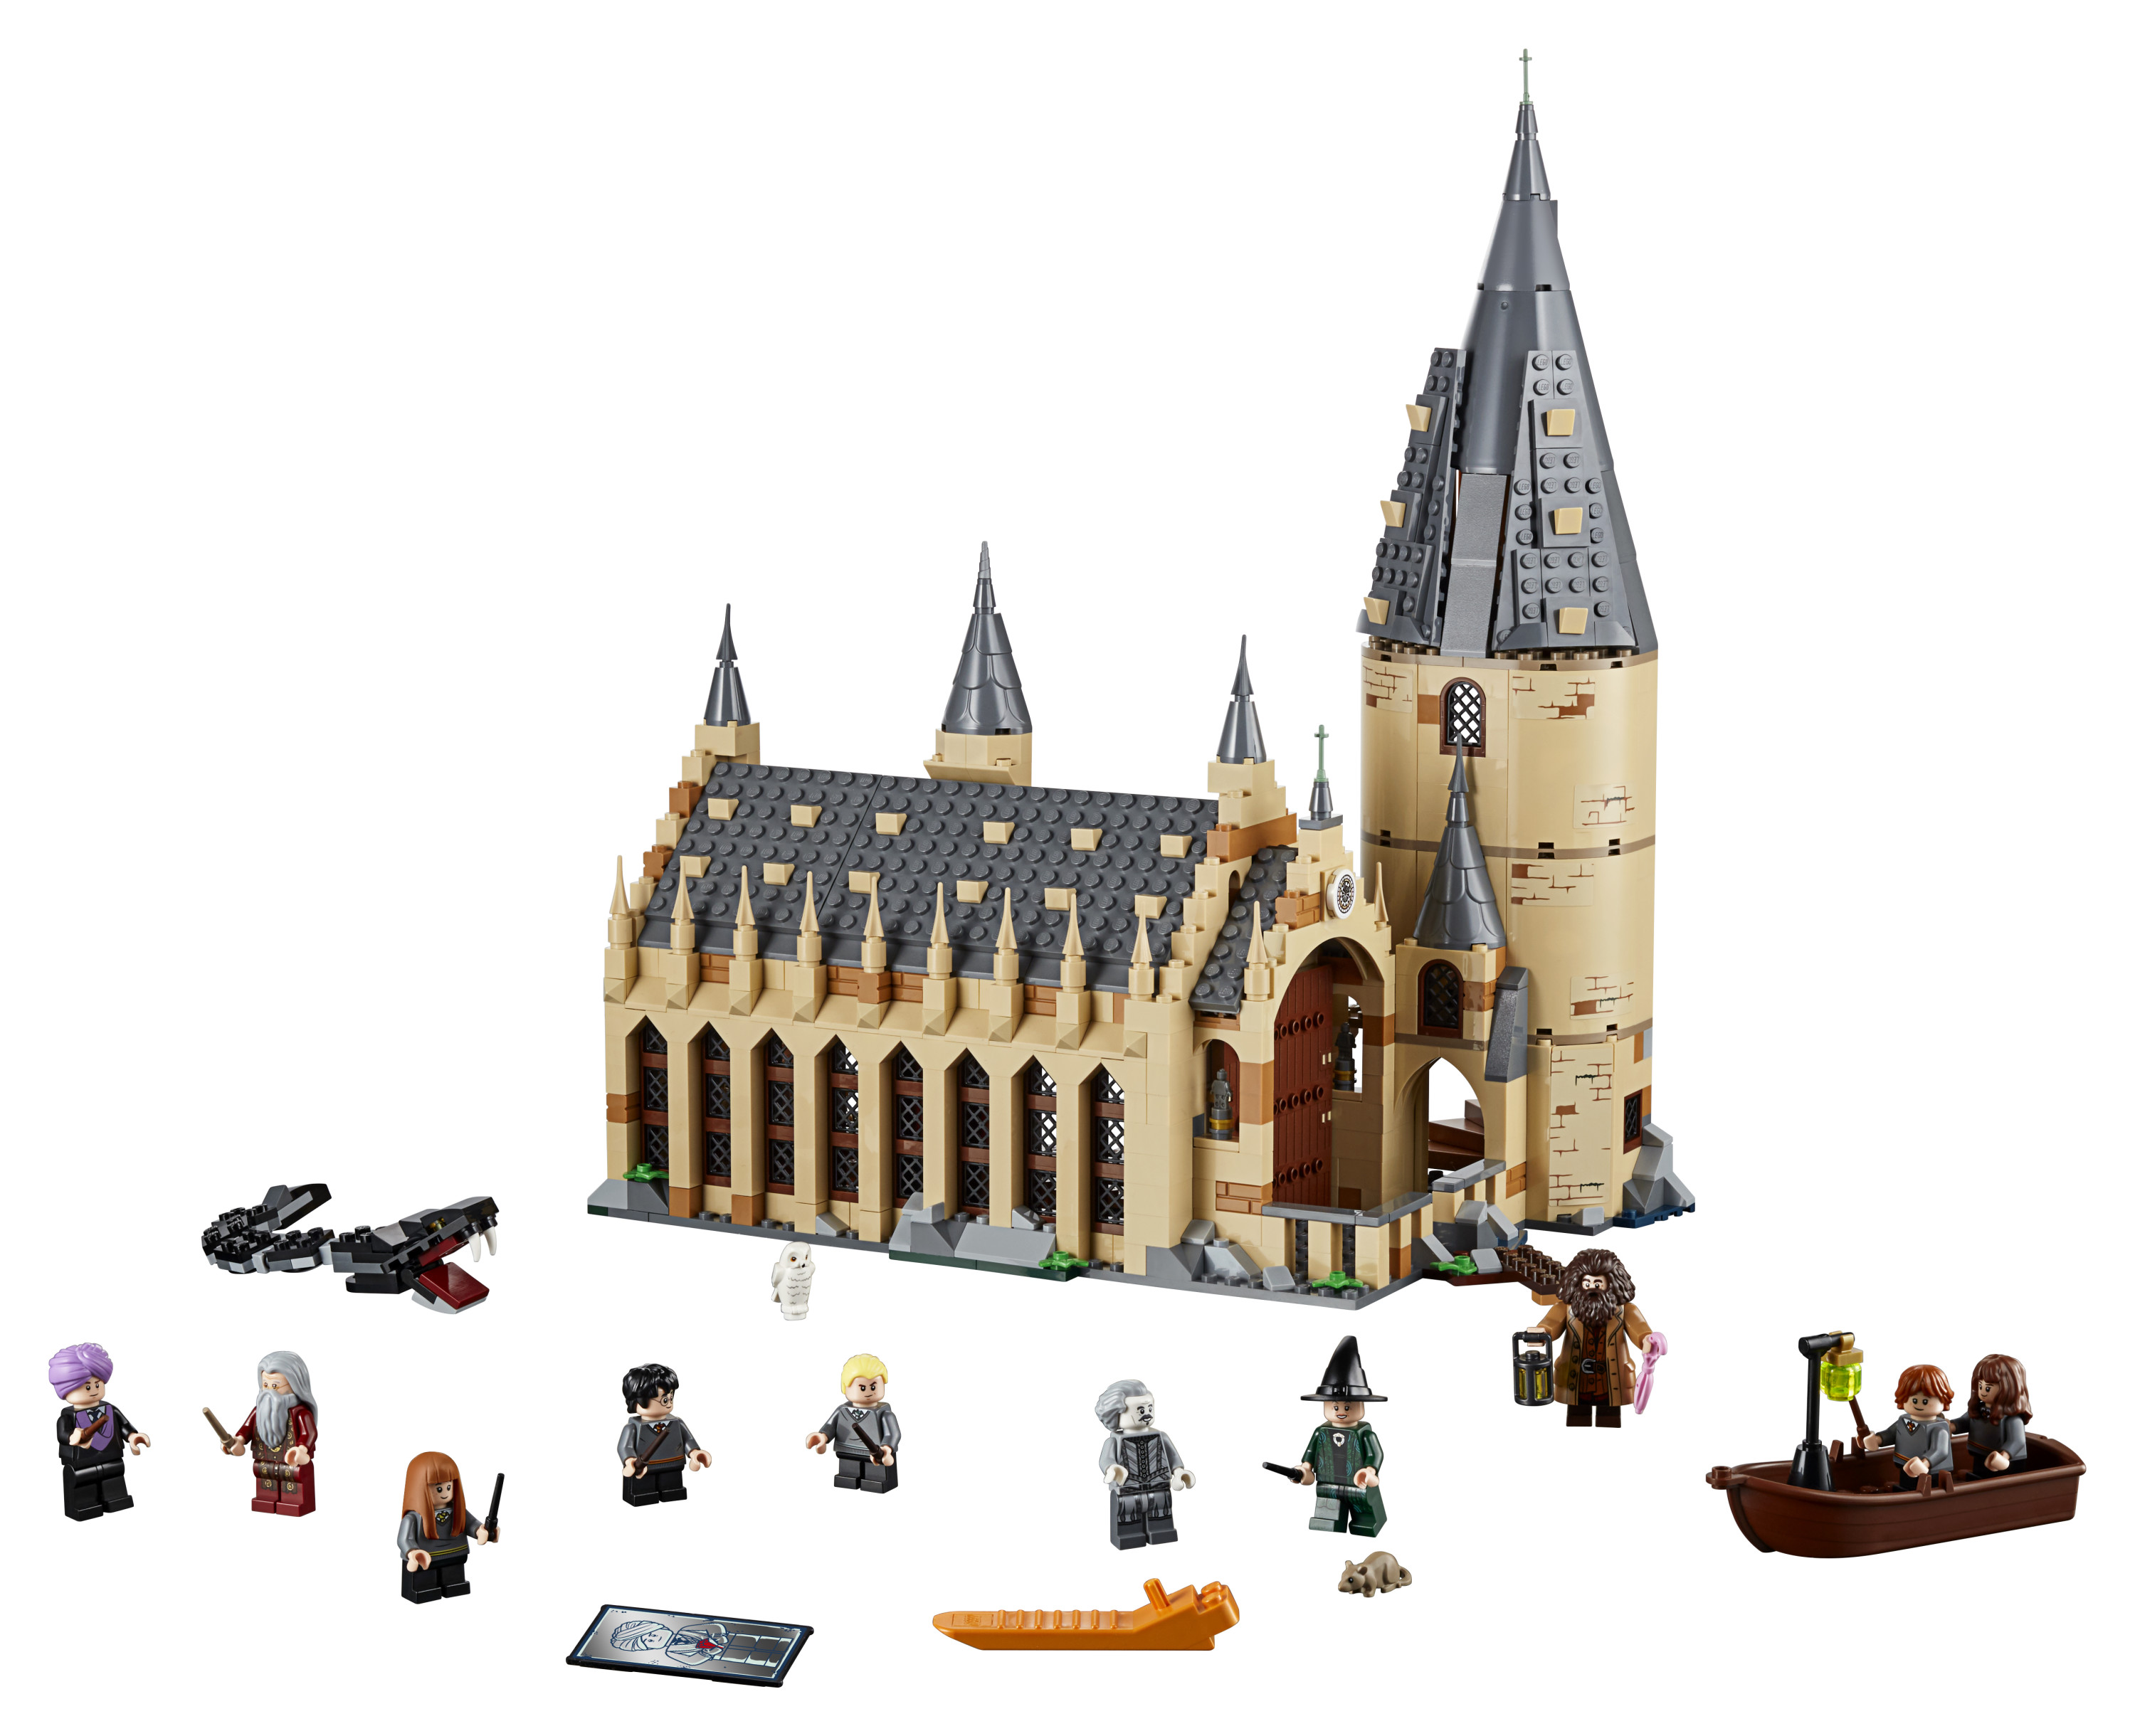 送料無料 レゴ ハリーポッター ホグワーツの大広間 Lego 878ピース ホグワーツ Harry Potter ハリポタ 映画 男の子 女の子 ビルディング プレイセット おもちゃ 幼児 玩具 知育玩具 組み立て ブロック オトナレゴ 大人 楽天海外直送 Painfreepainrelief Com